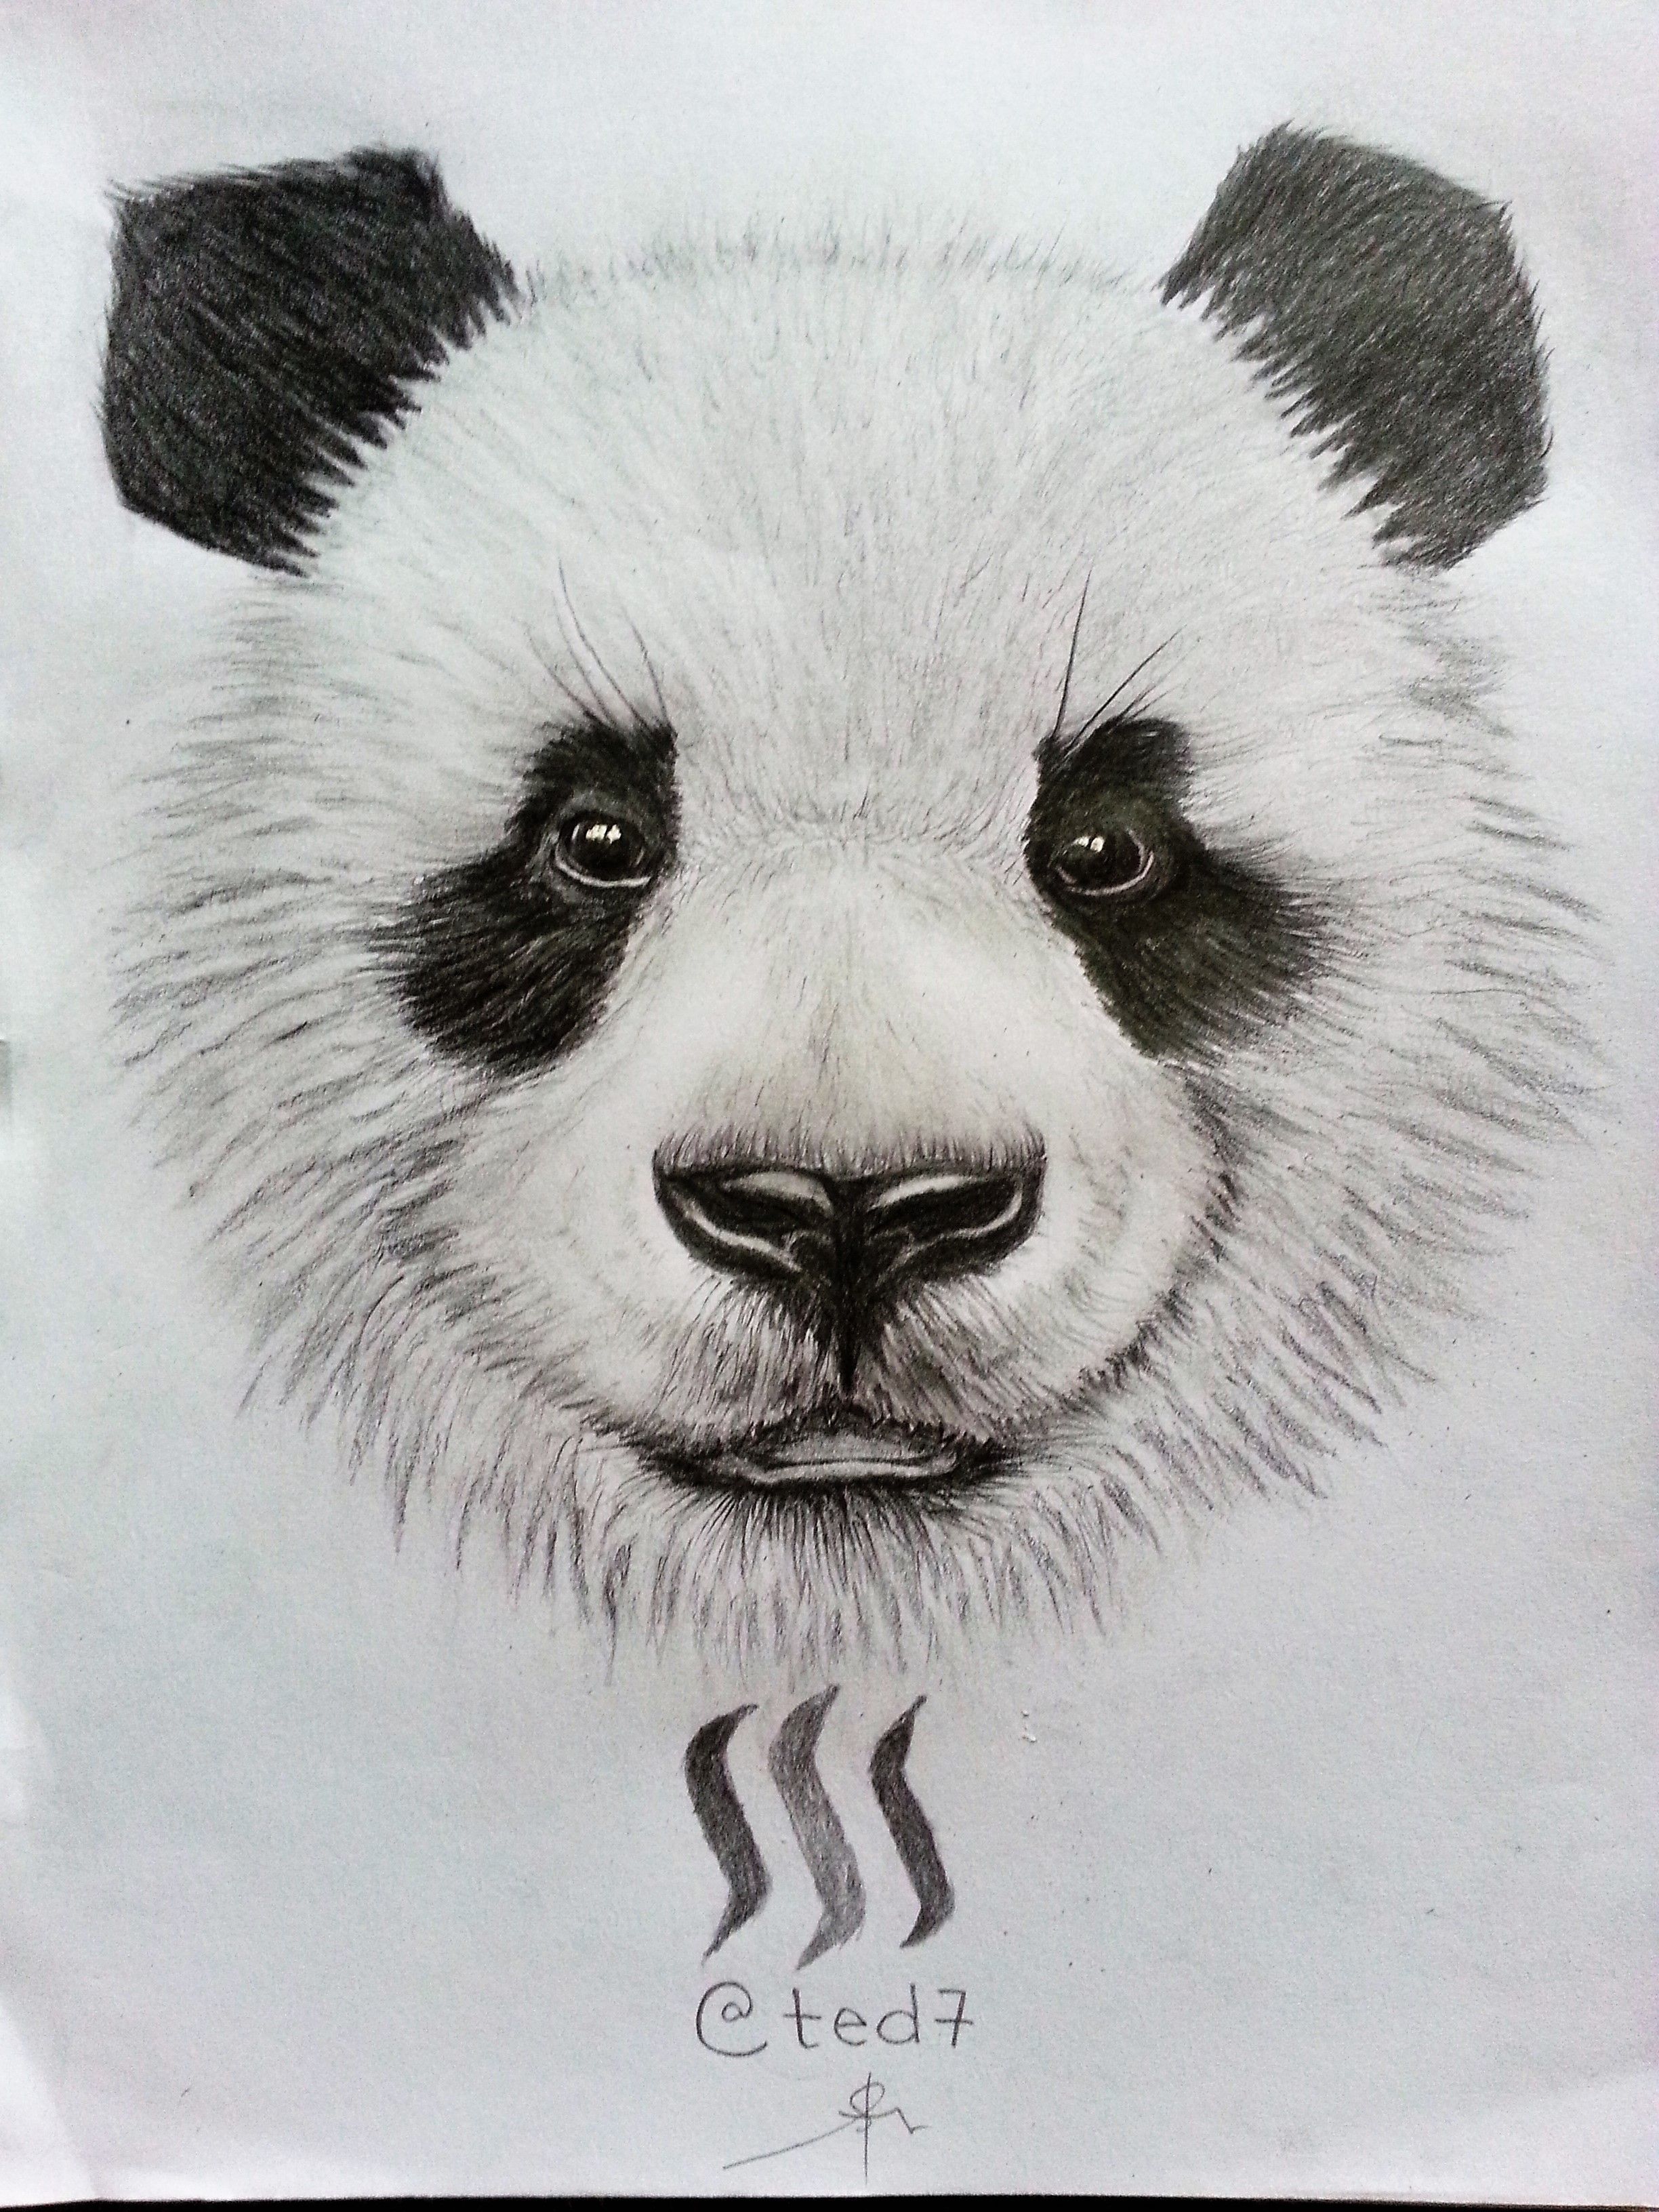 panda head drawing in pencil